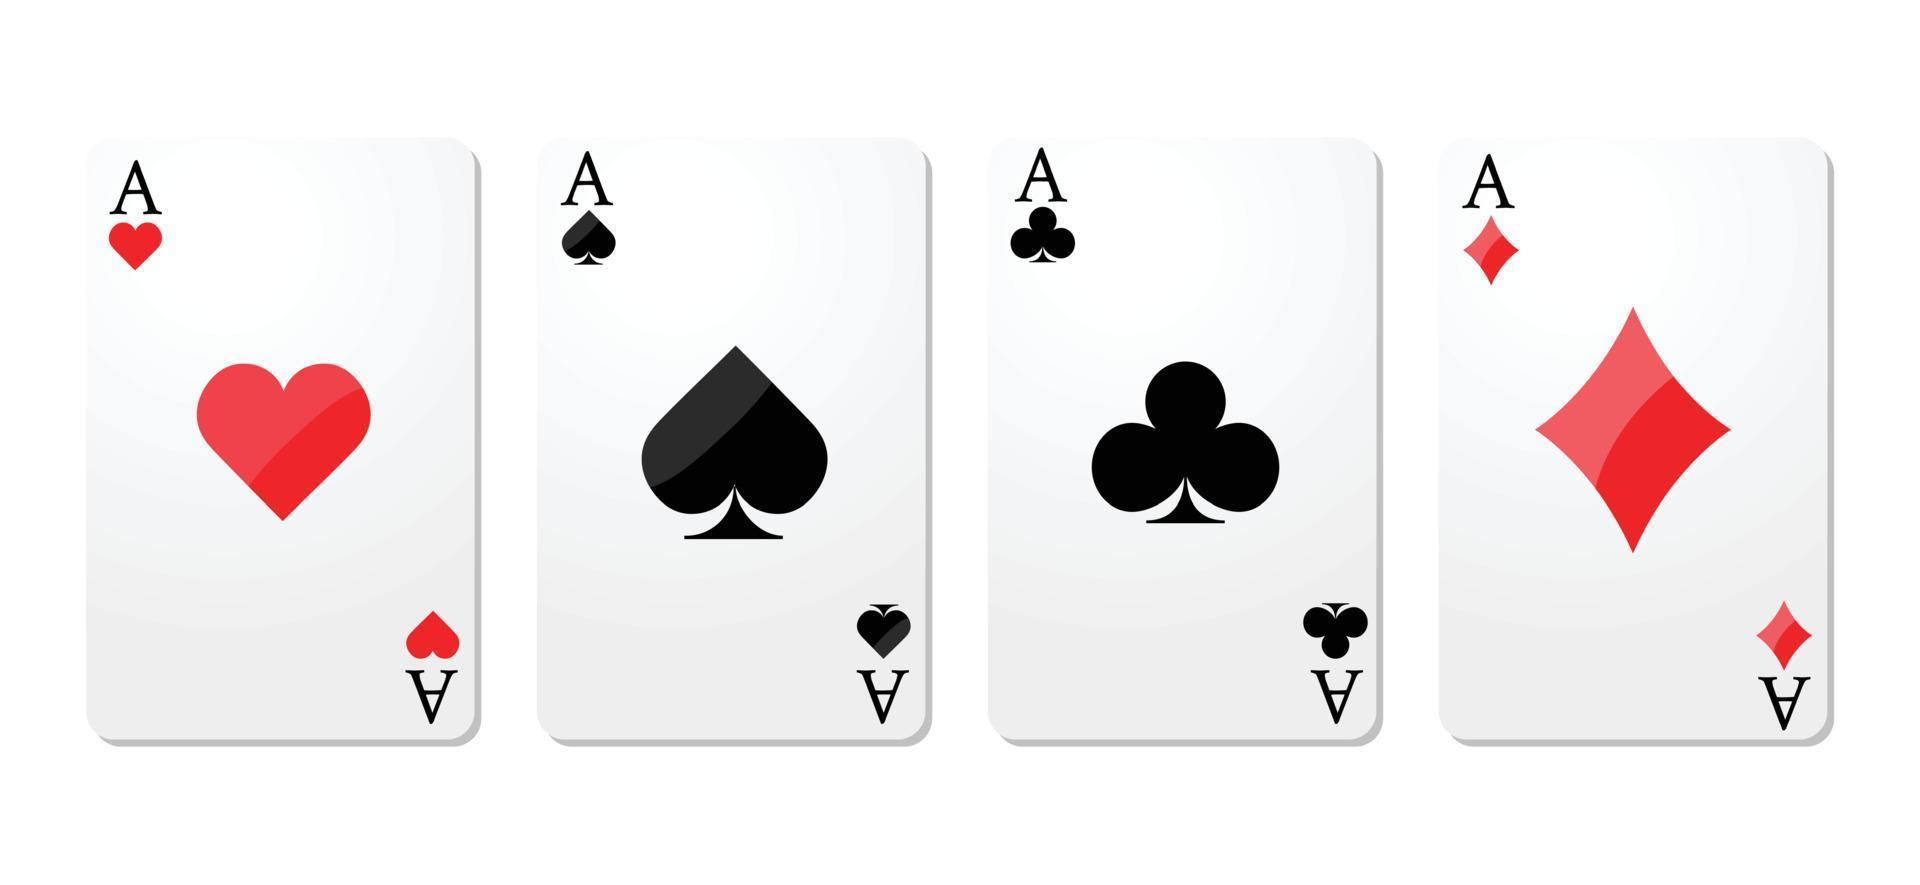 cartes d'as dans une rangée fond blanc, jeux de hasard et symboles sur diverses cartes, club de diamants de coeur et pique. vecteur